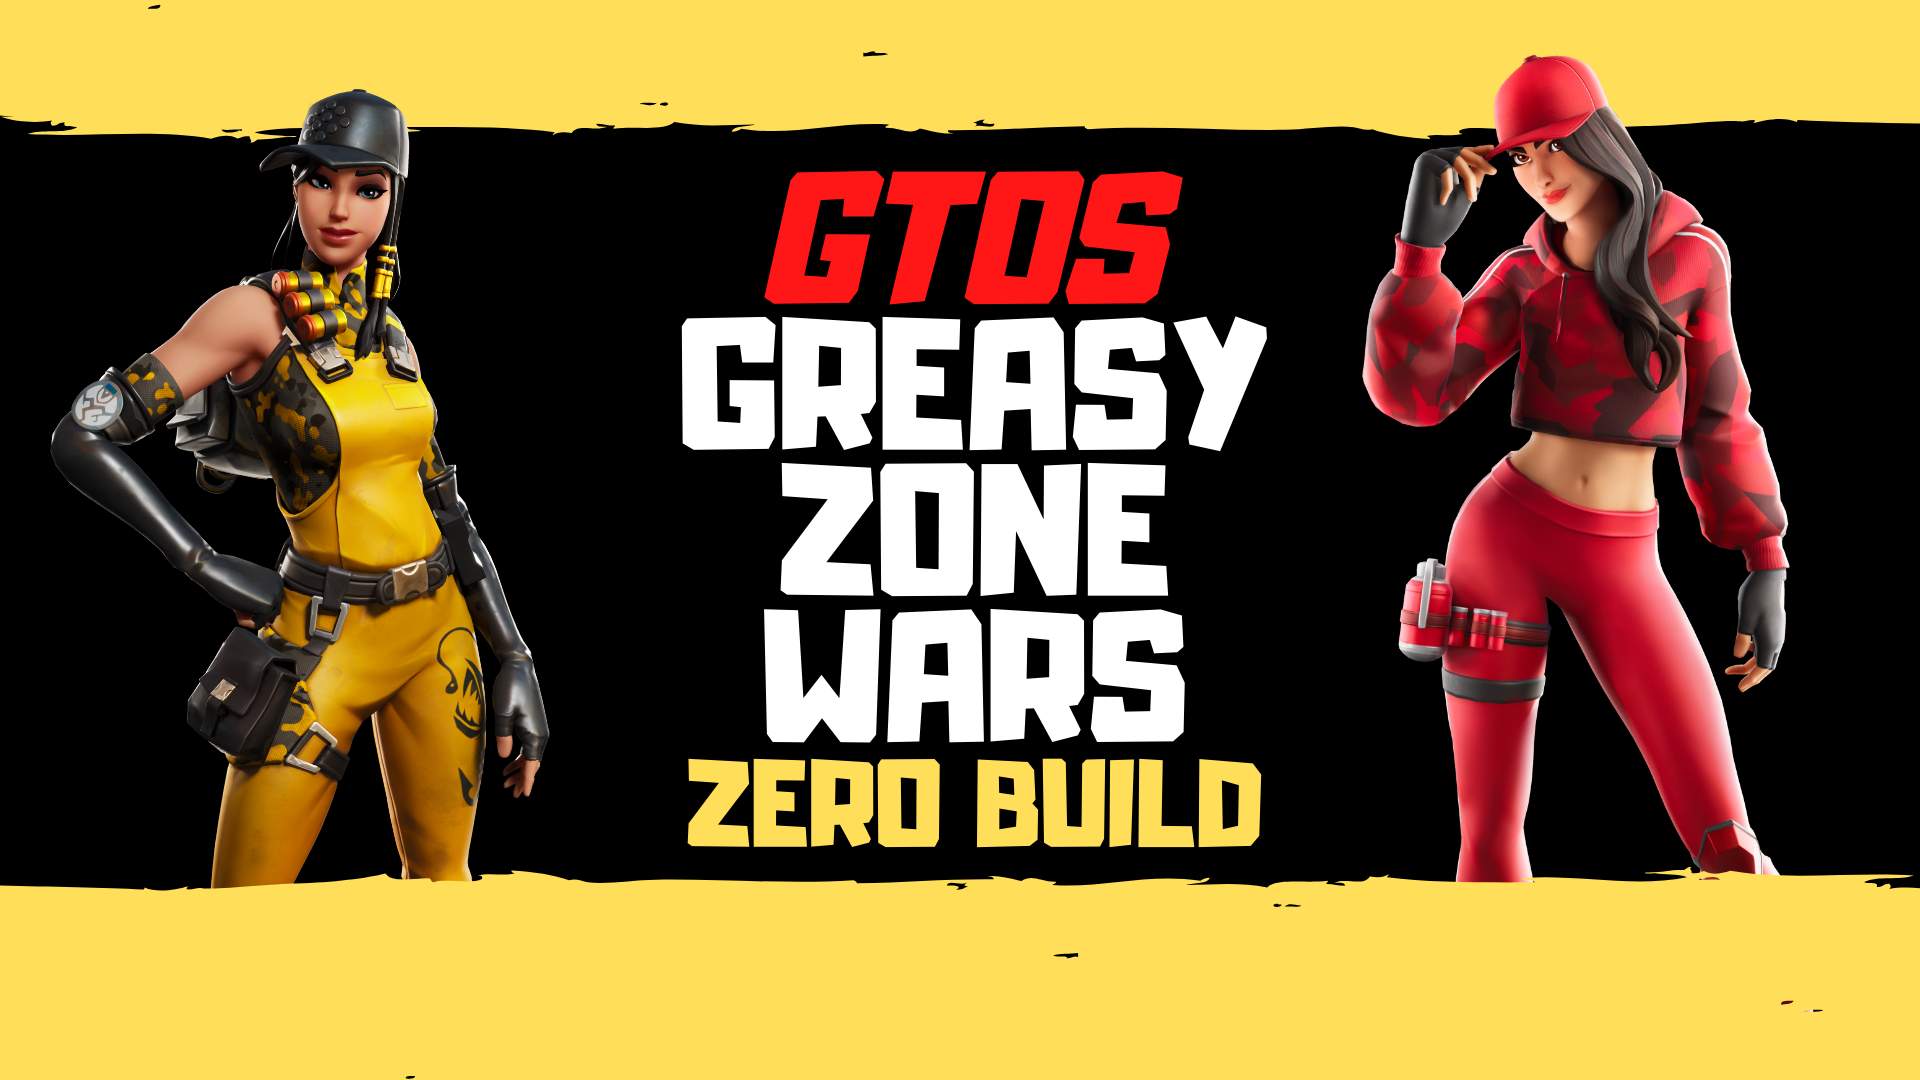 GTOS GREASY ZONEWARS ZERO BUILD